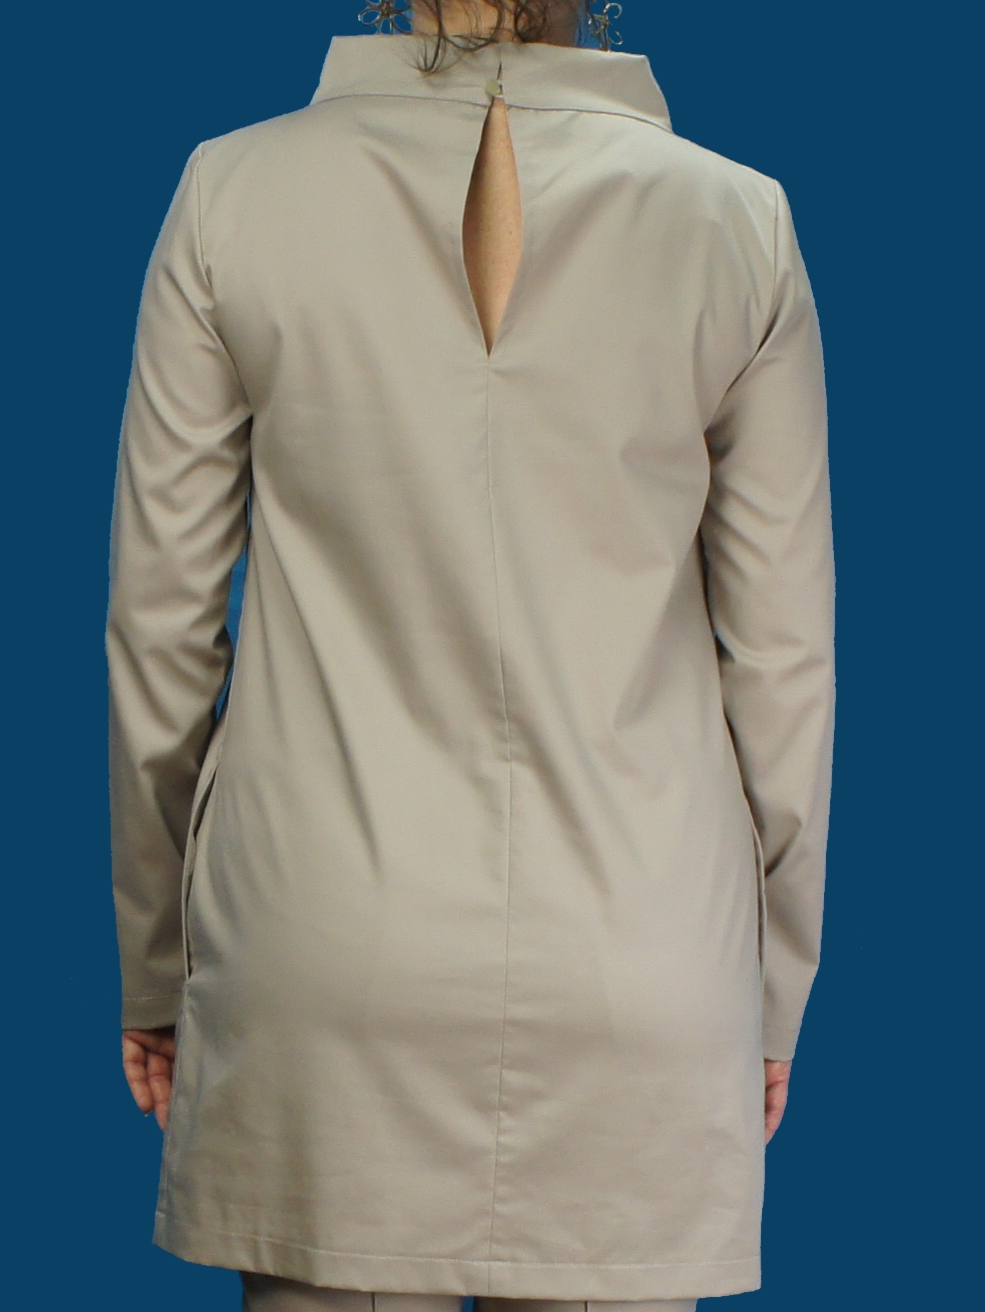 женская медицинская блузка песочного цвета с длинными рукавами